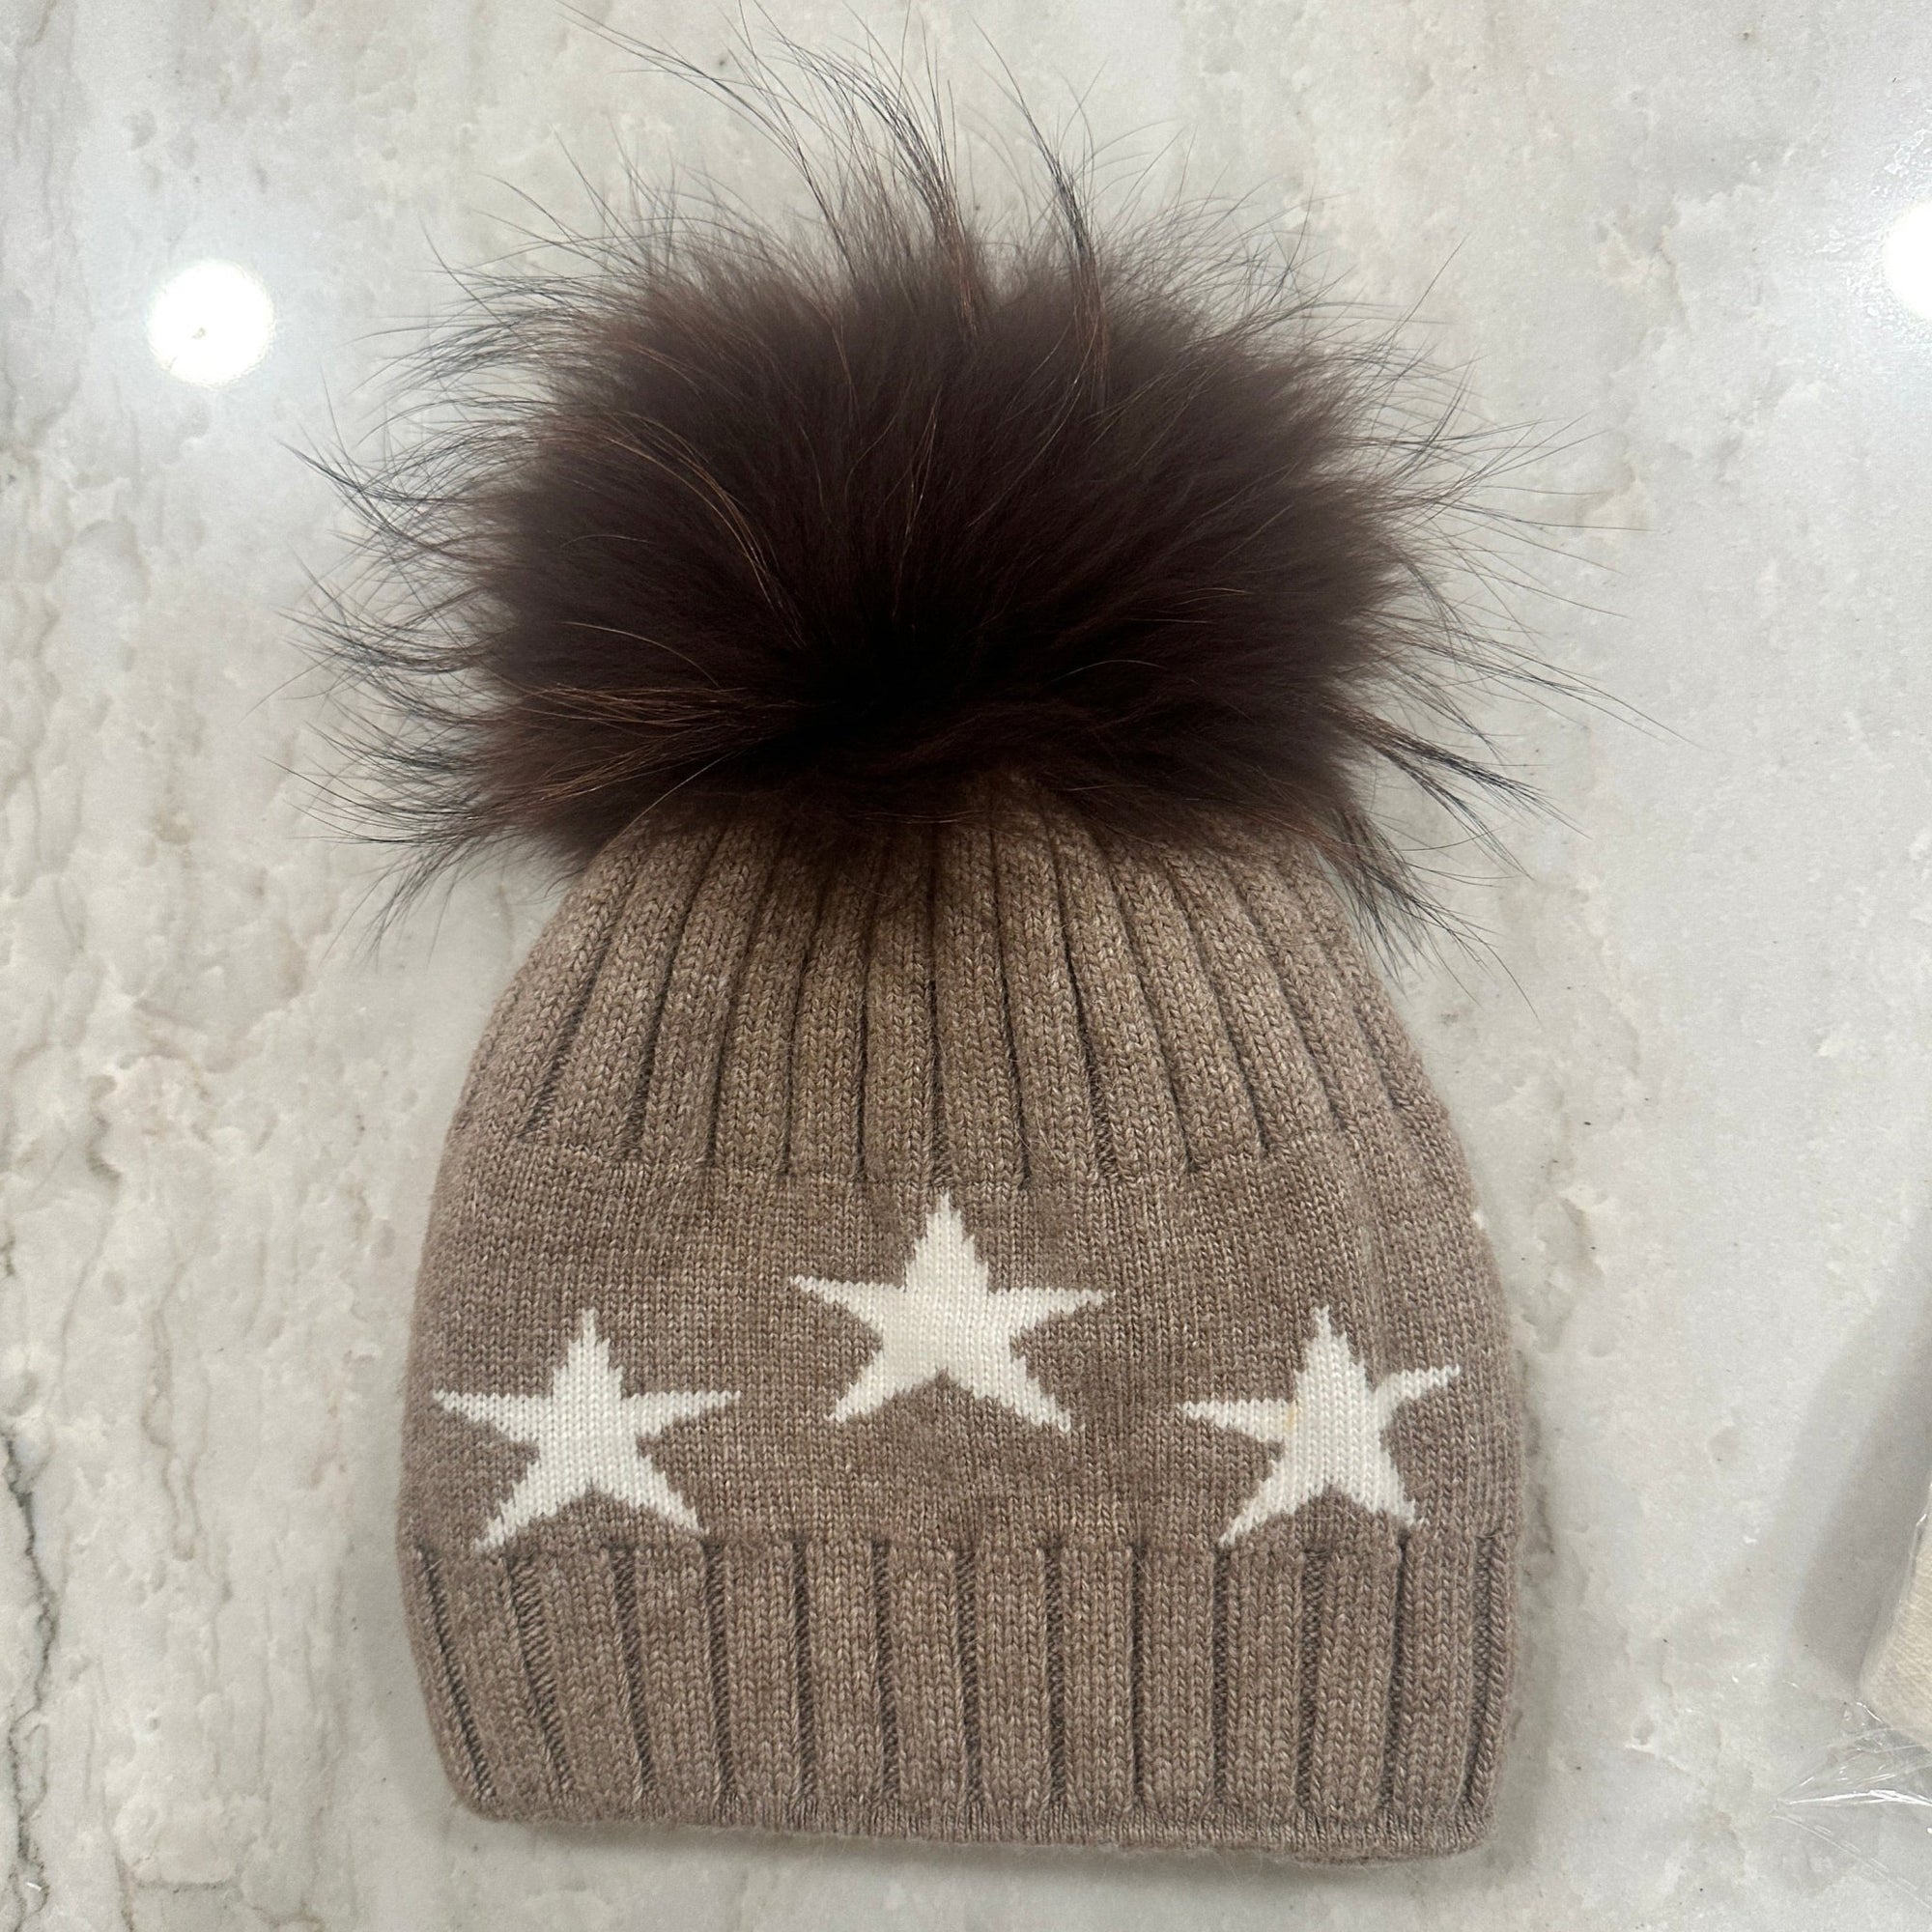 Cashmere Blend Star Winter Hat - elliparr